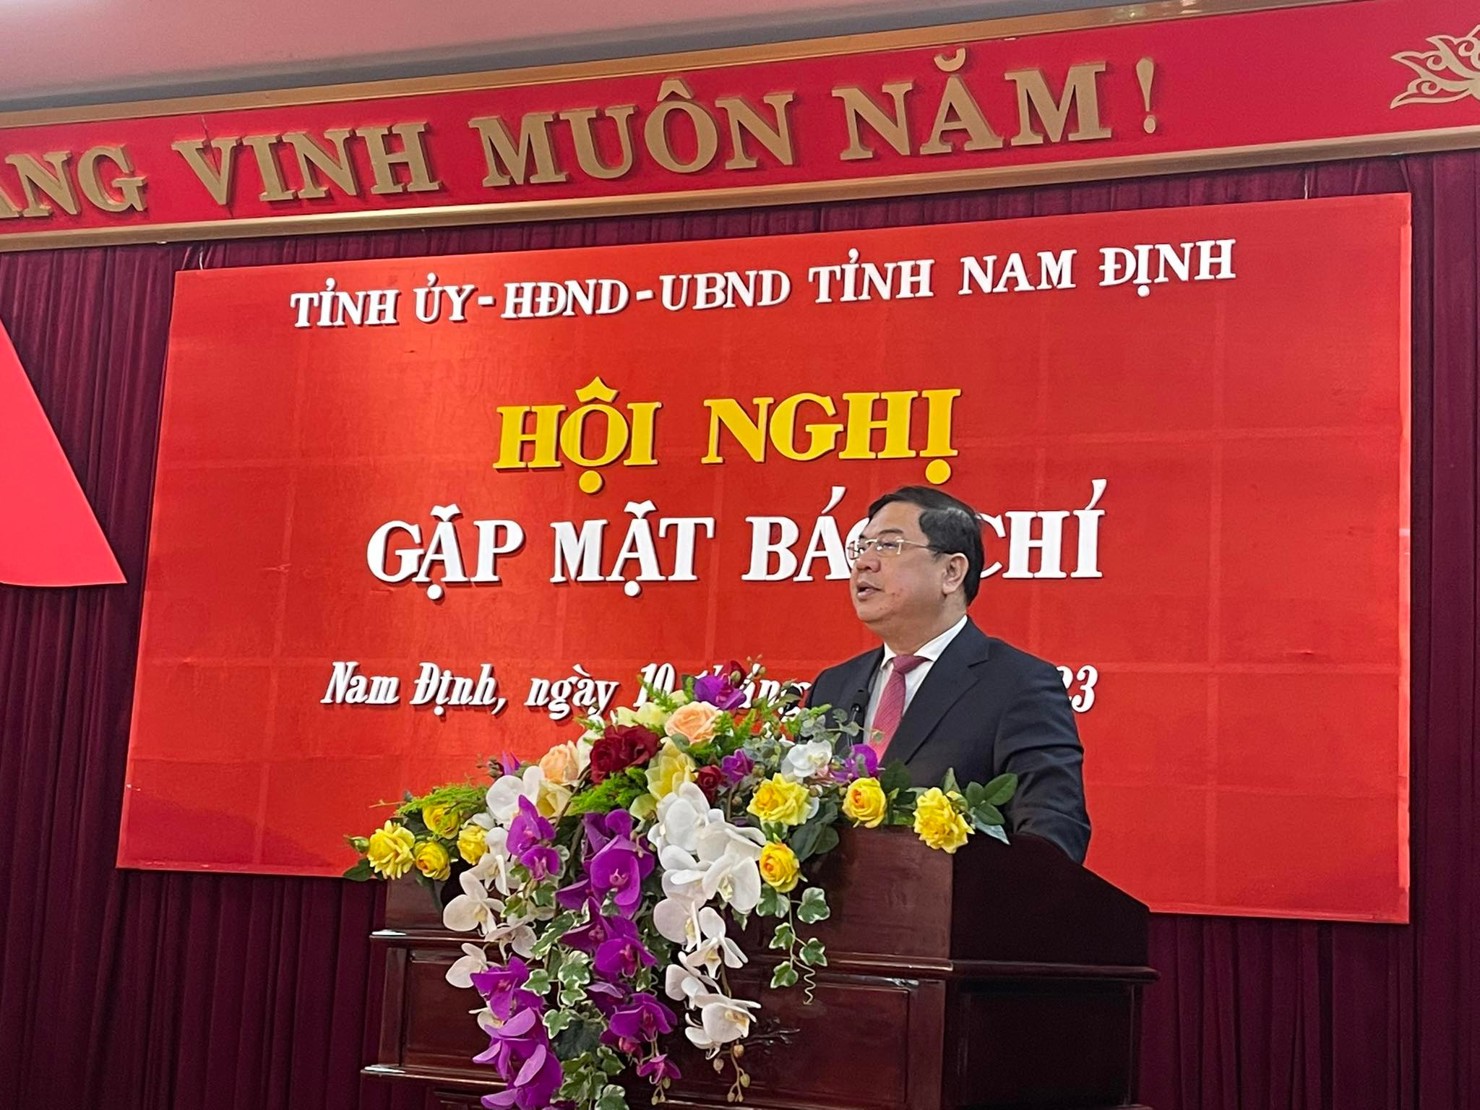 Đồng chí Phạm Gia Túc vui mừng trước những kết quả đạt được của tỉnh Nam Định, đồng thời thông tin về một số giải pháp thúc đẩy đà tăng trưởng.